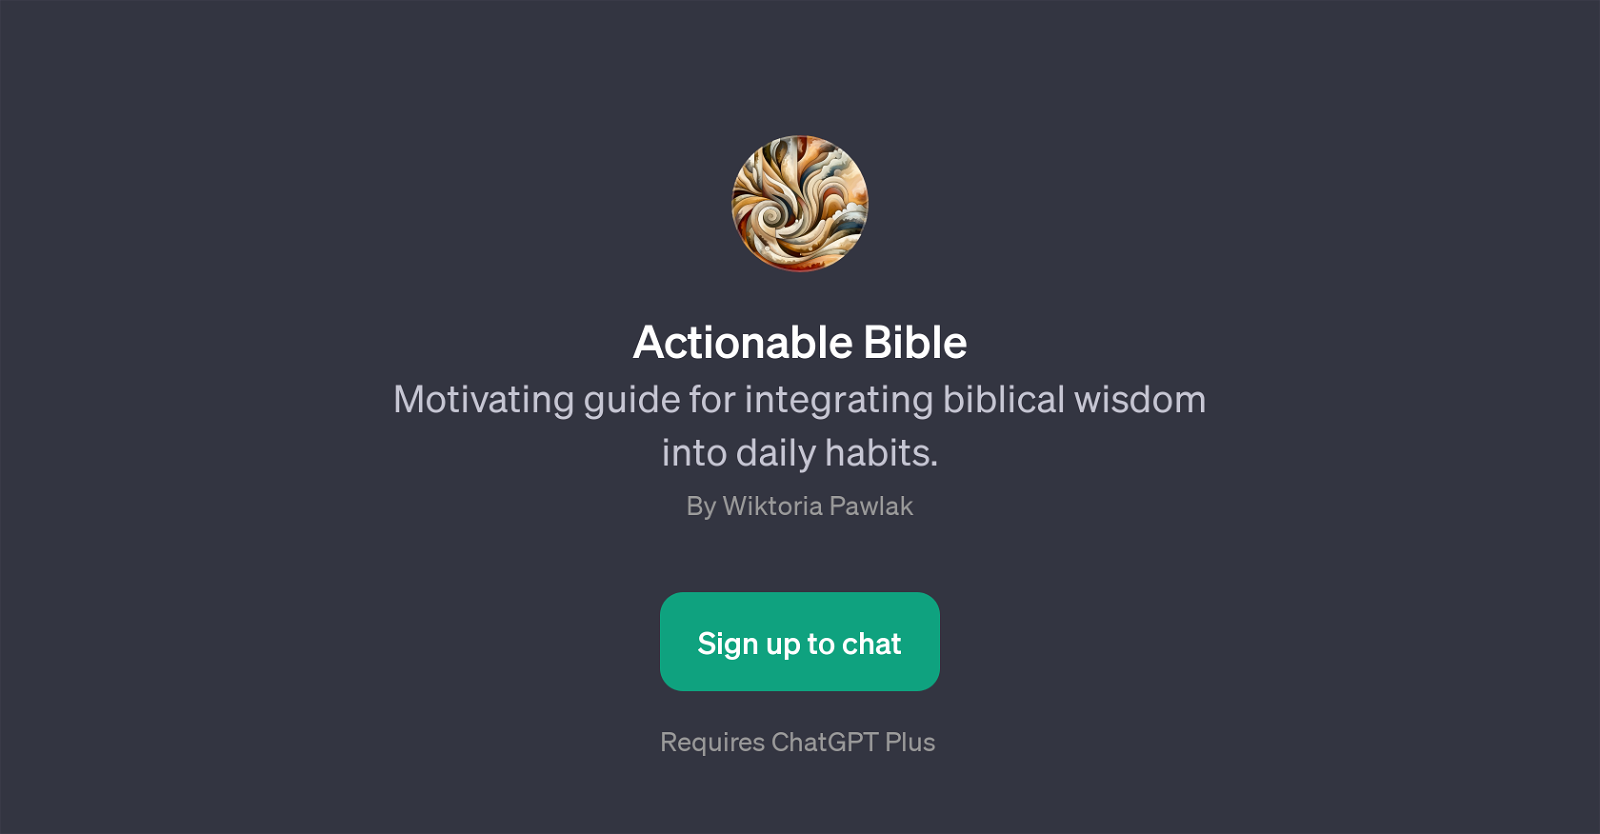 Actionable Bible website